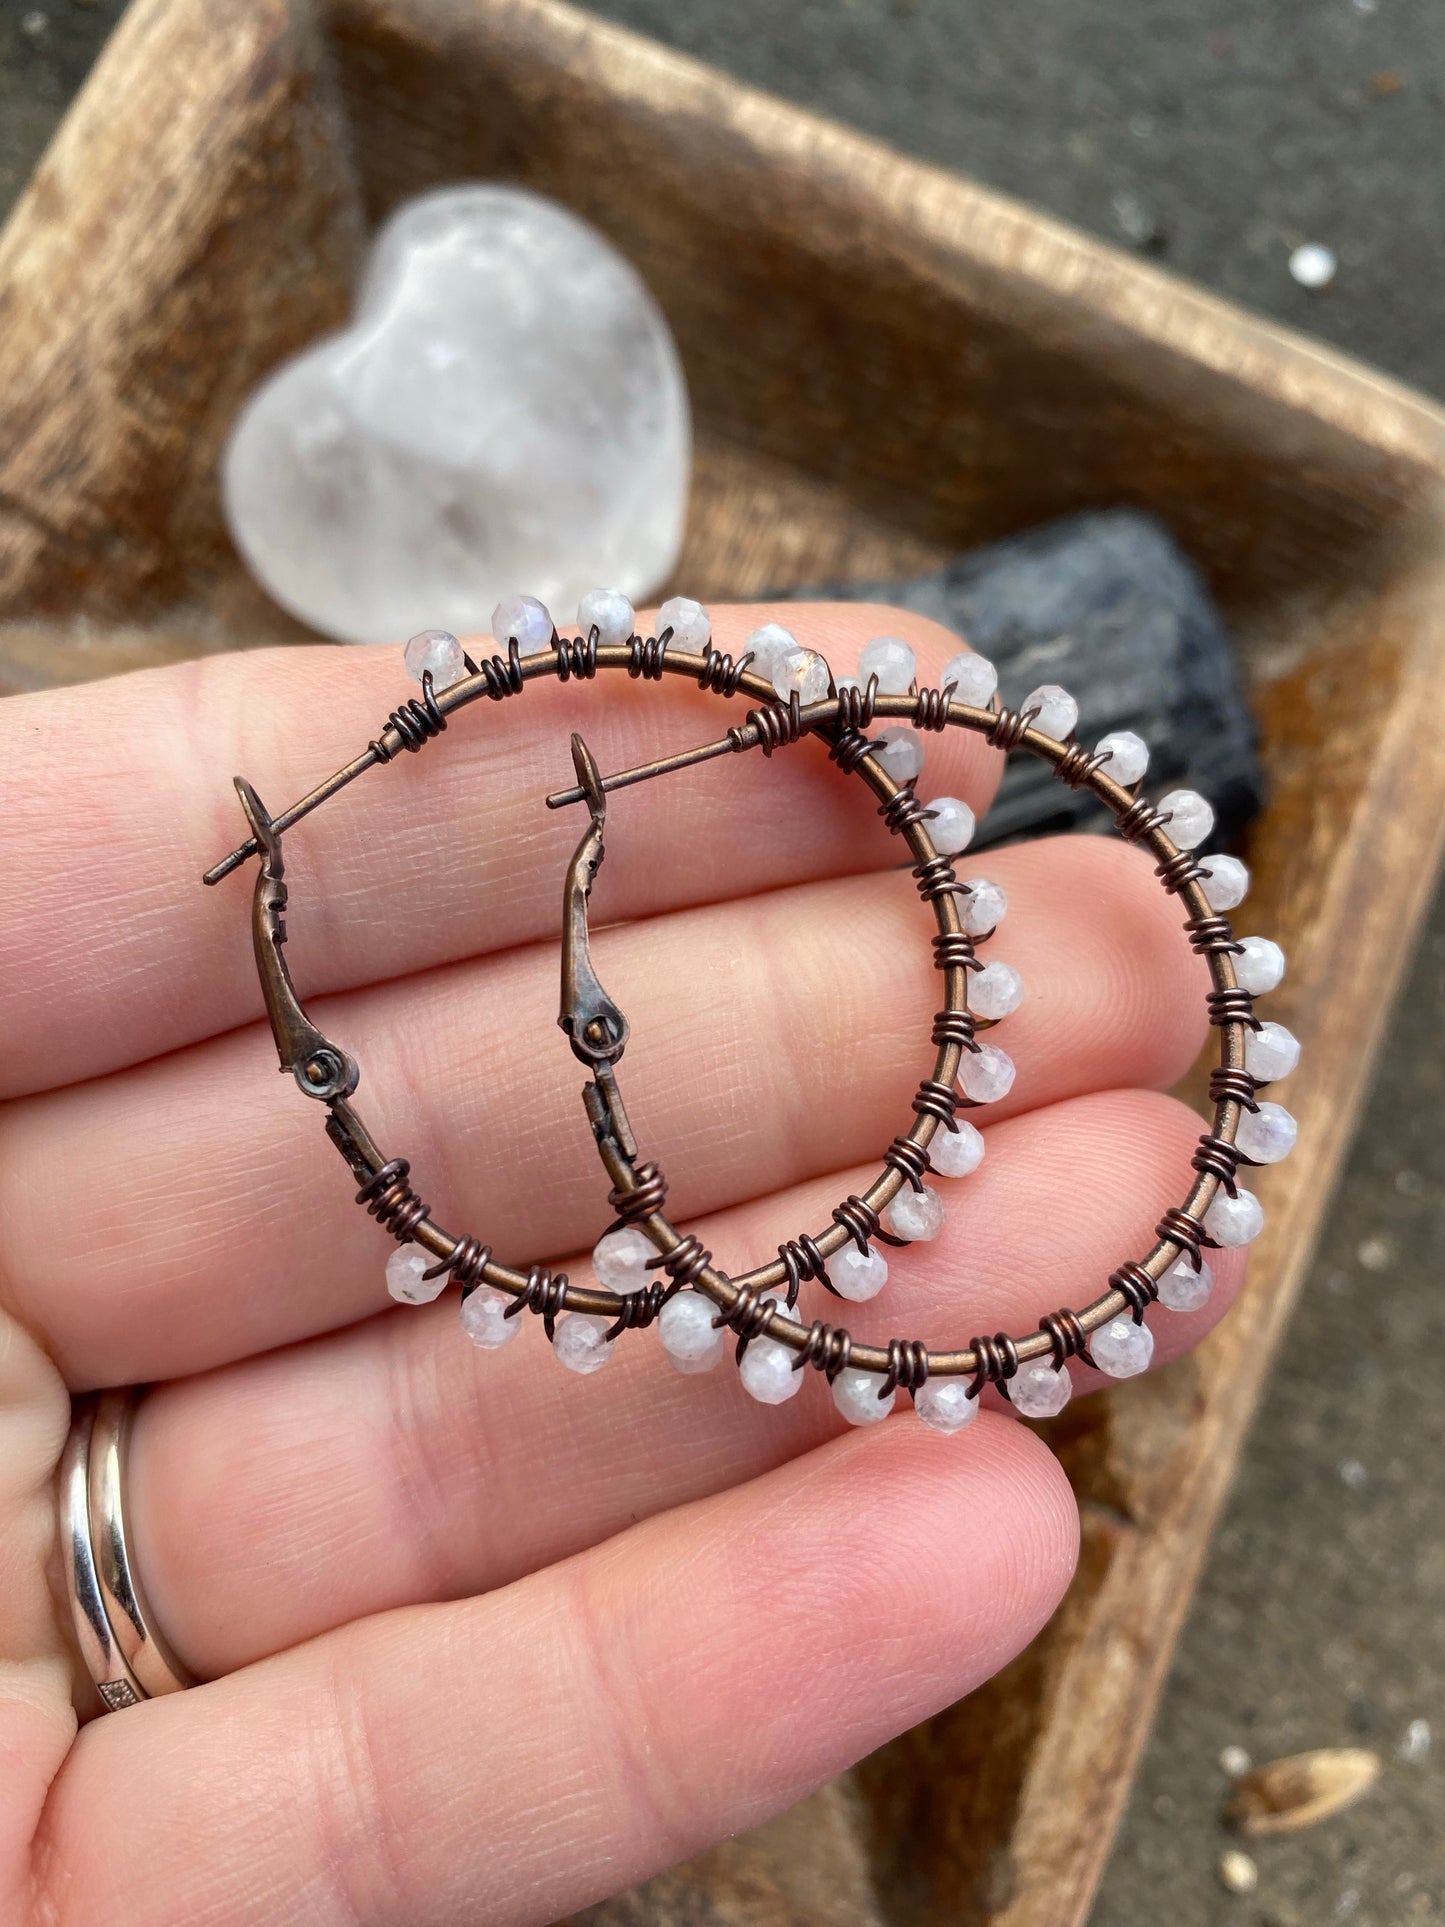 Moonstone gemstone, copper metal hoops, wire wrapped, earrings - Andria Bieber Designs 